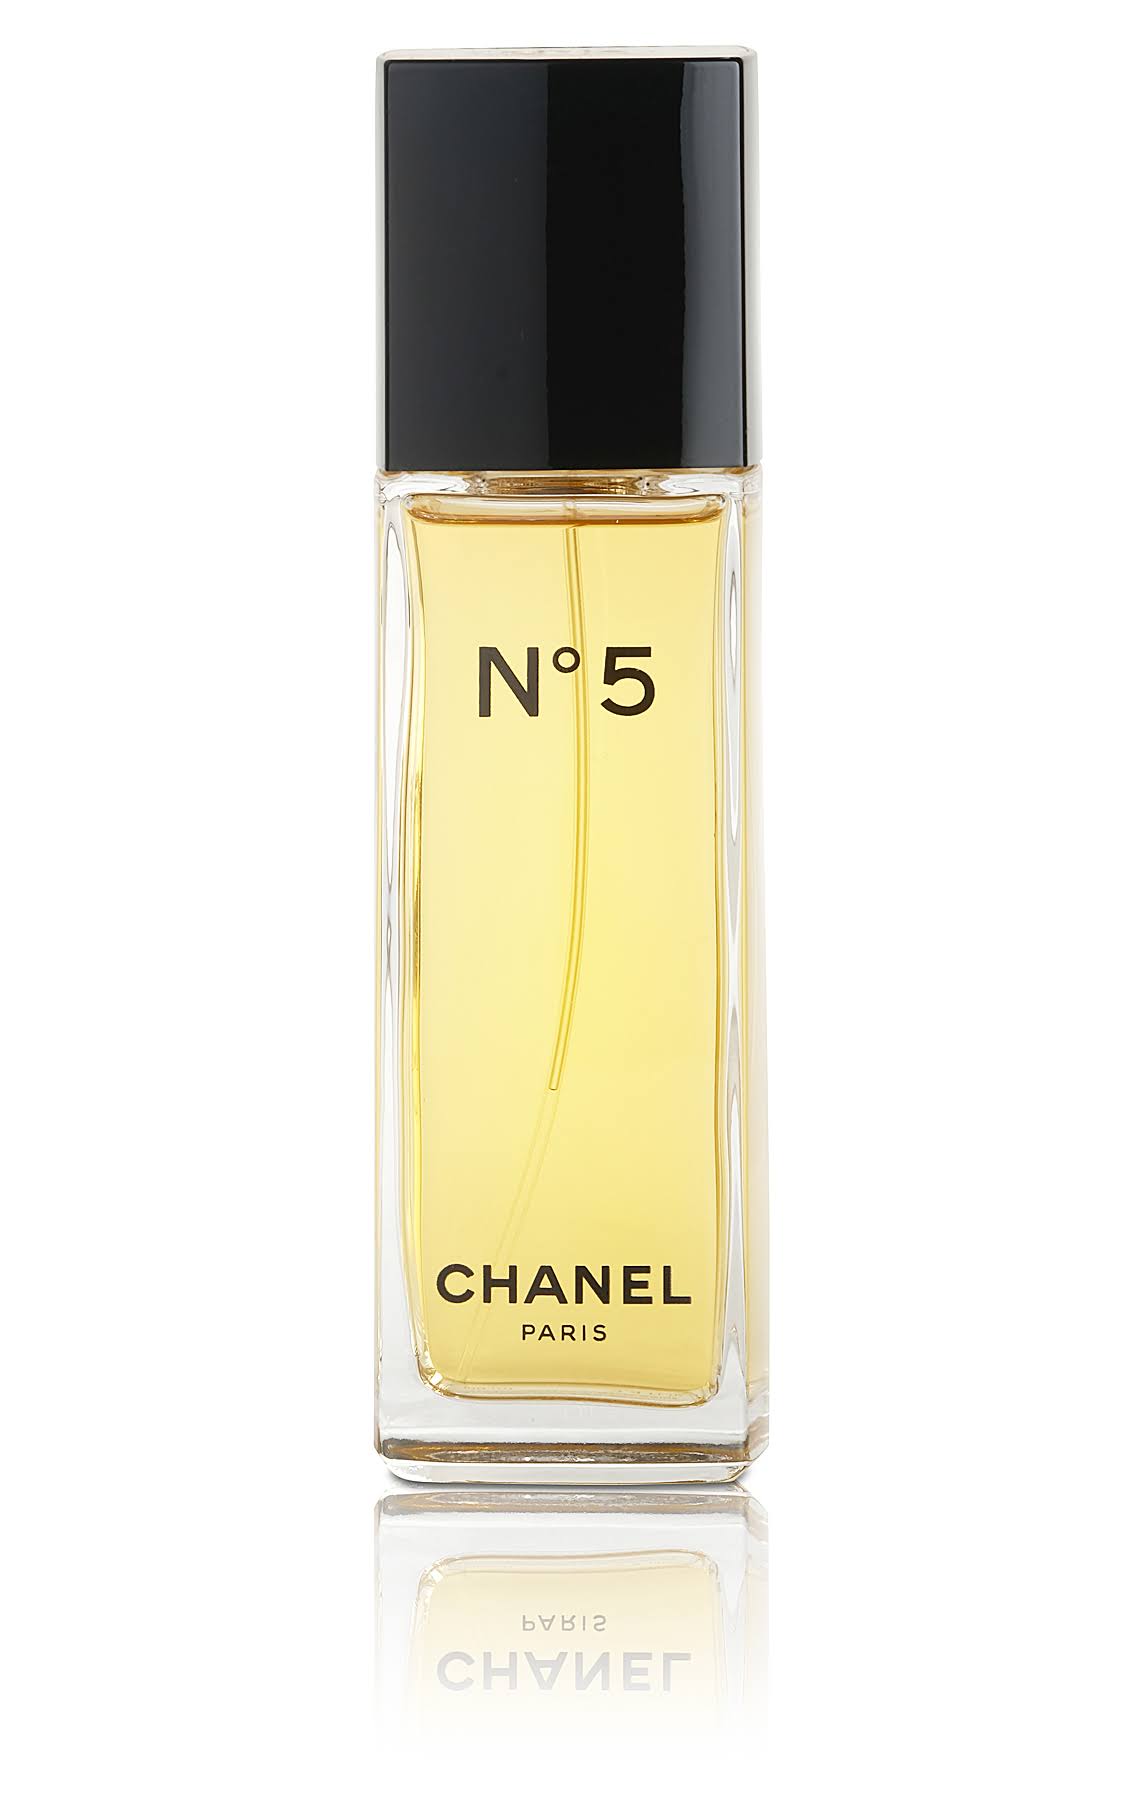 Chanel No 5 Eau de Parfum Spray - 35ml